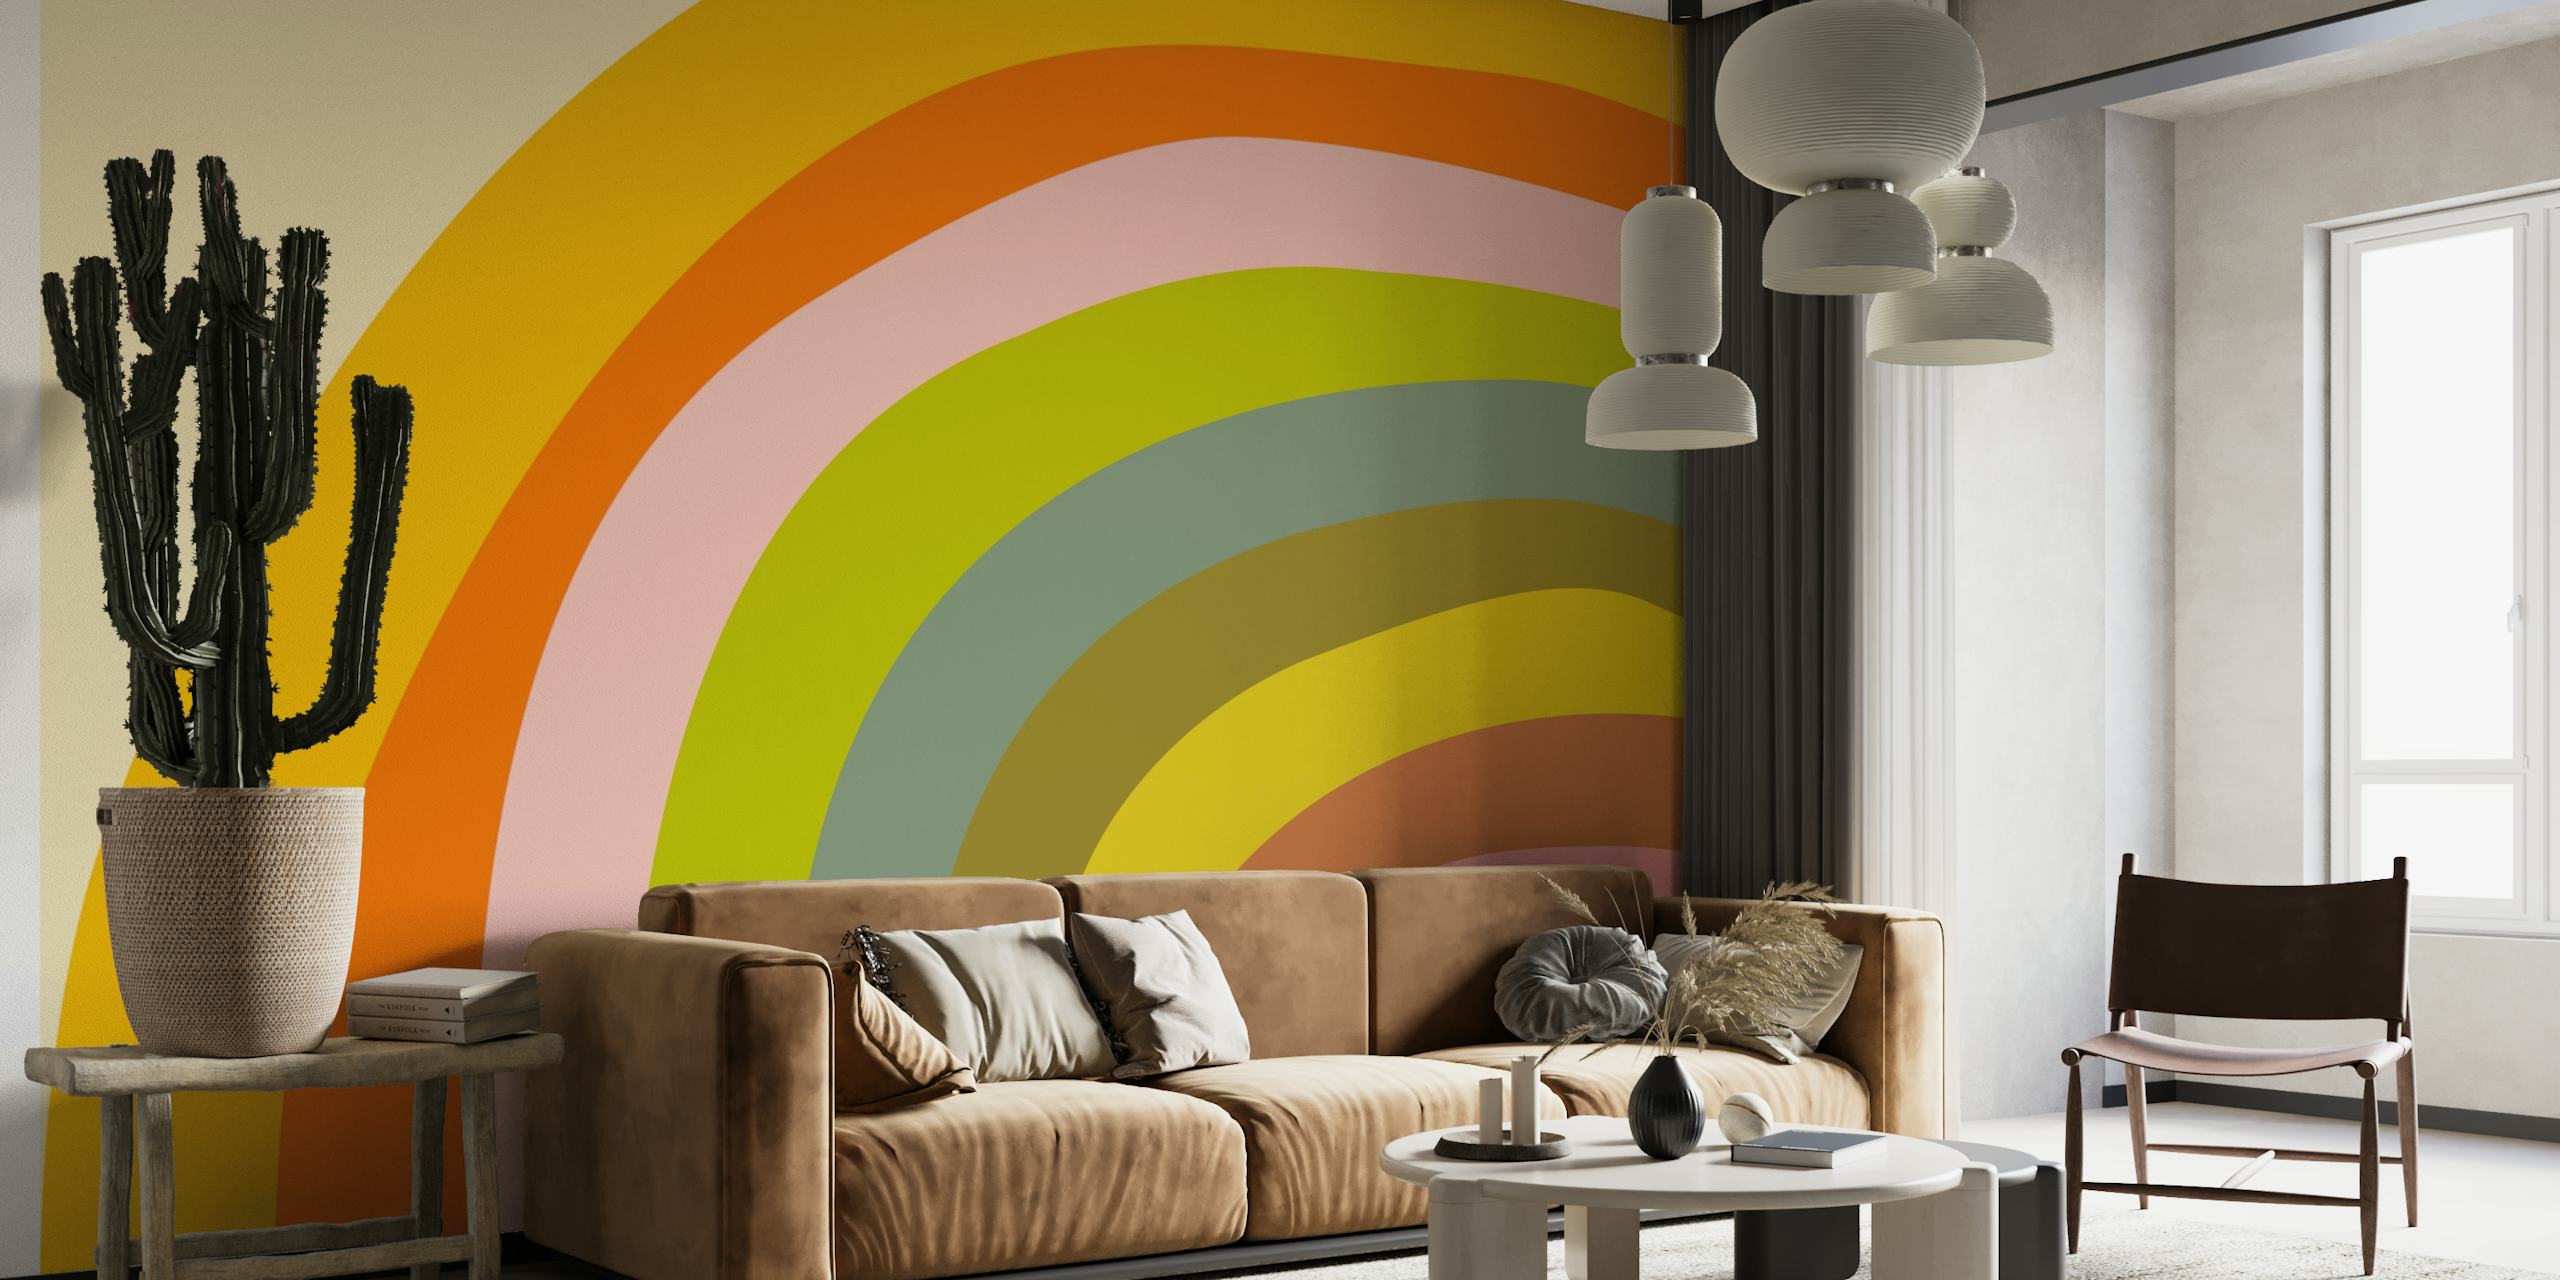 Un mural de pared con un arco iris abstracto, atrevido y colorido, en tonos cálidos y fríos.